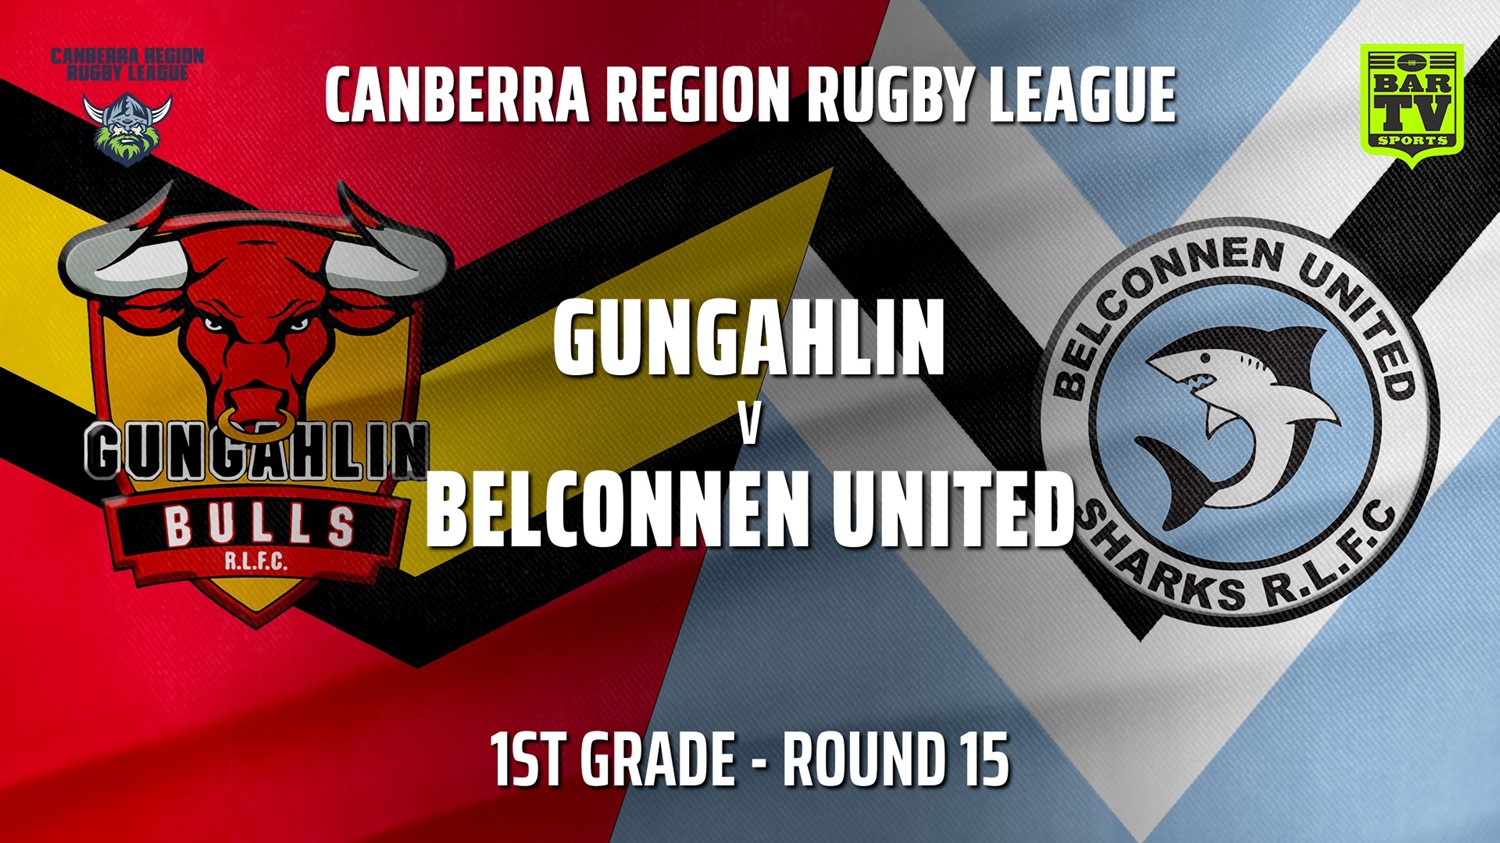 210807-Canberra Round 15 - 1st Grade - Gungahlin Bulls v Belconnen United Sharks Slate Image